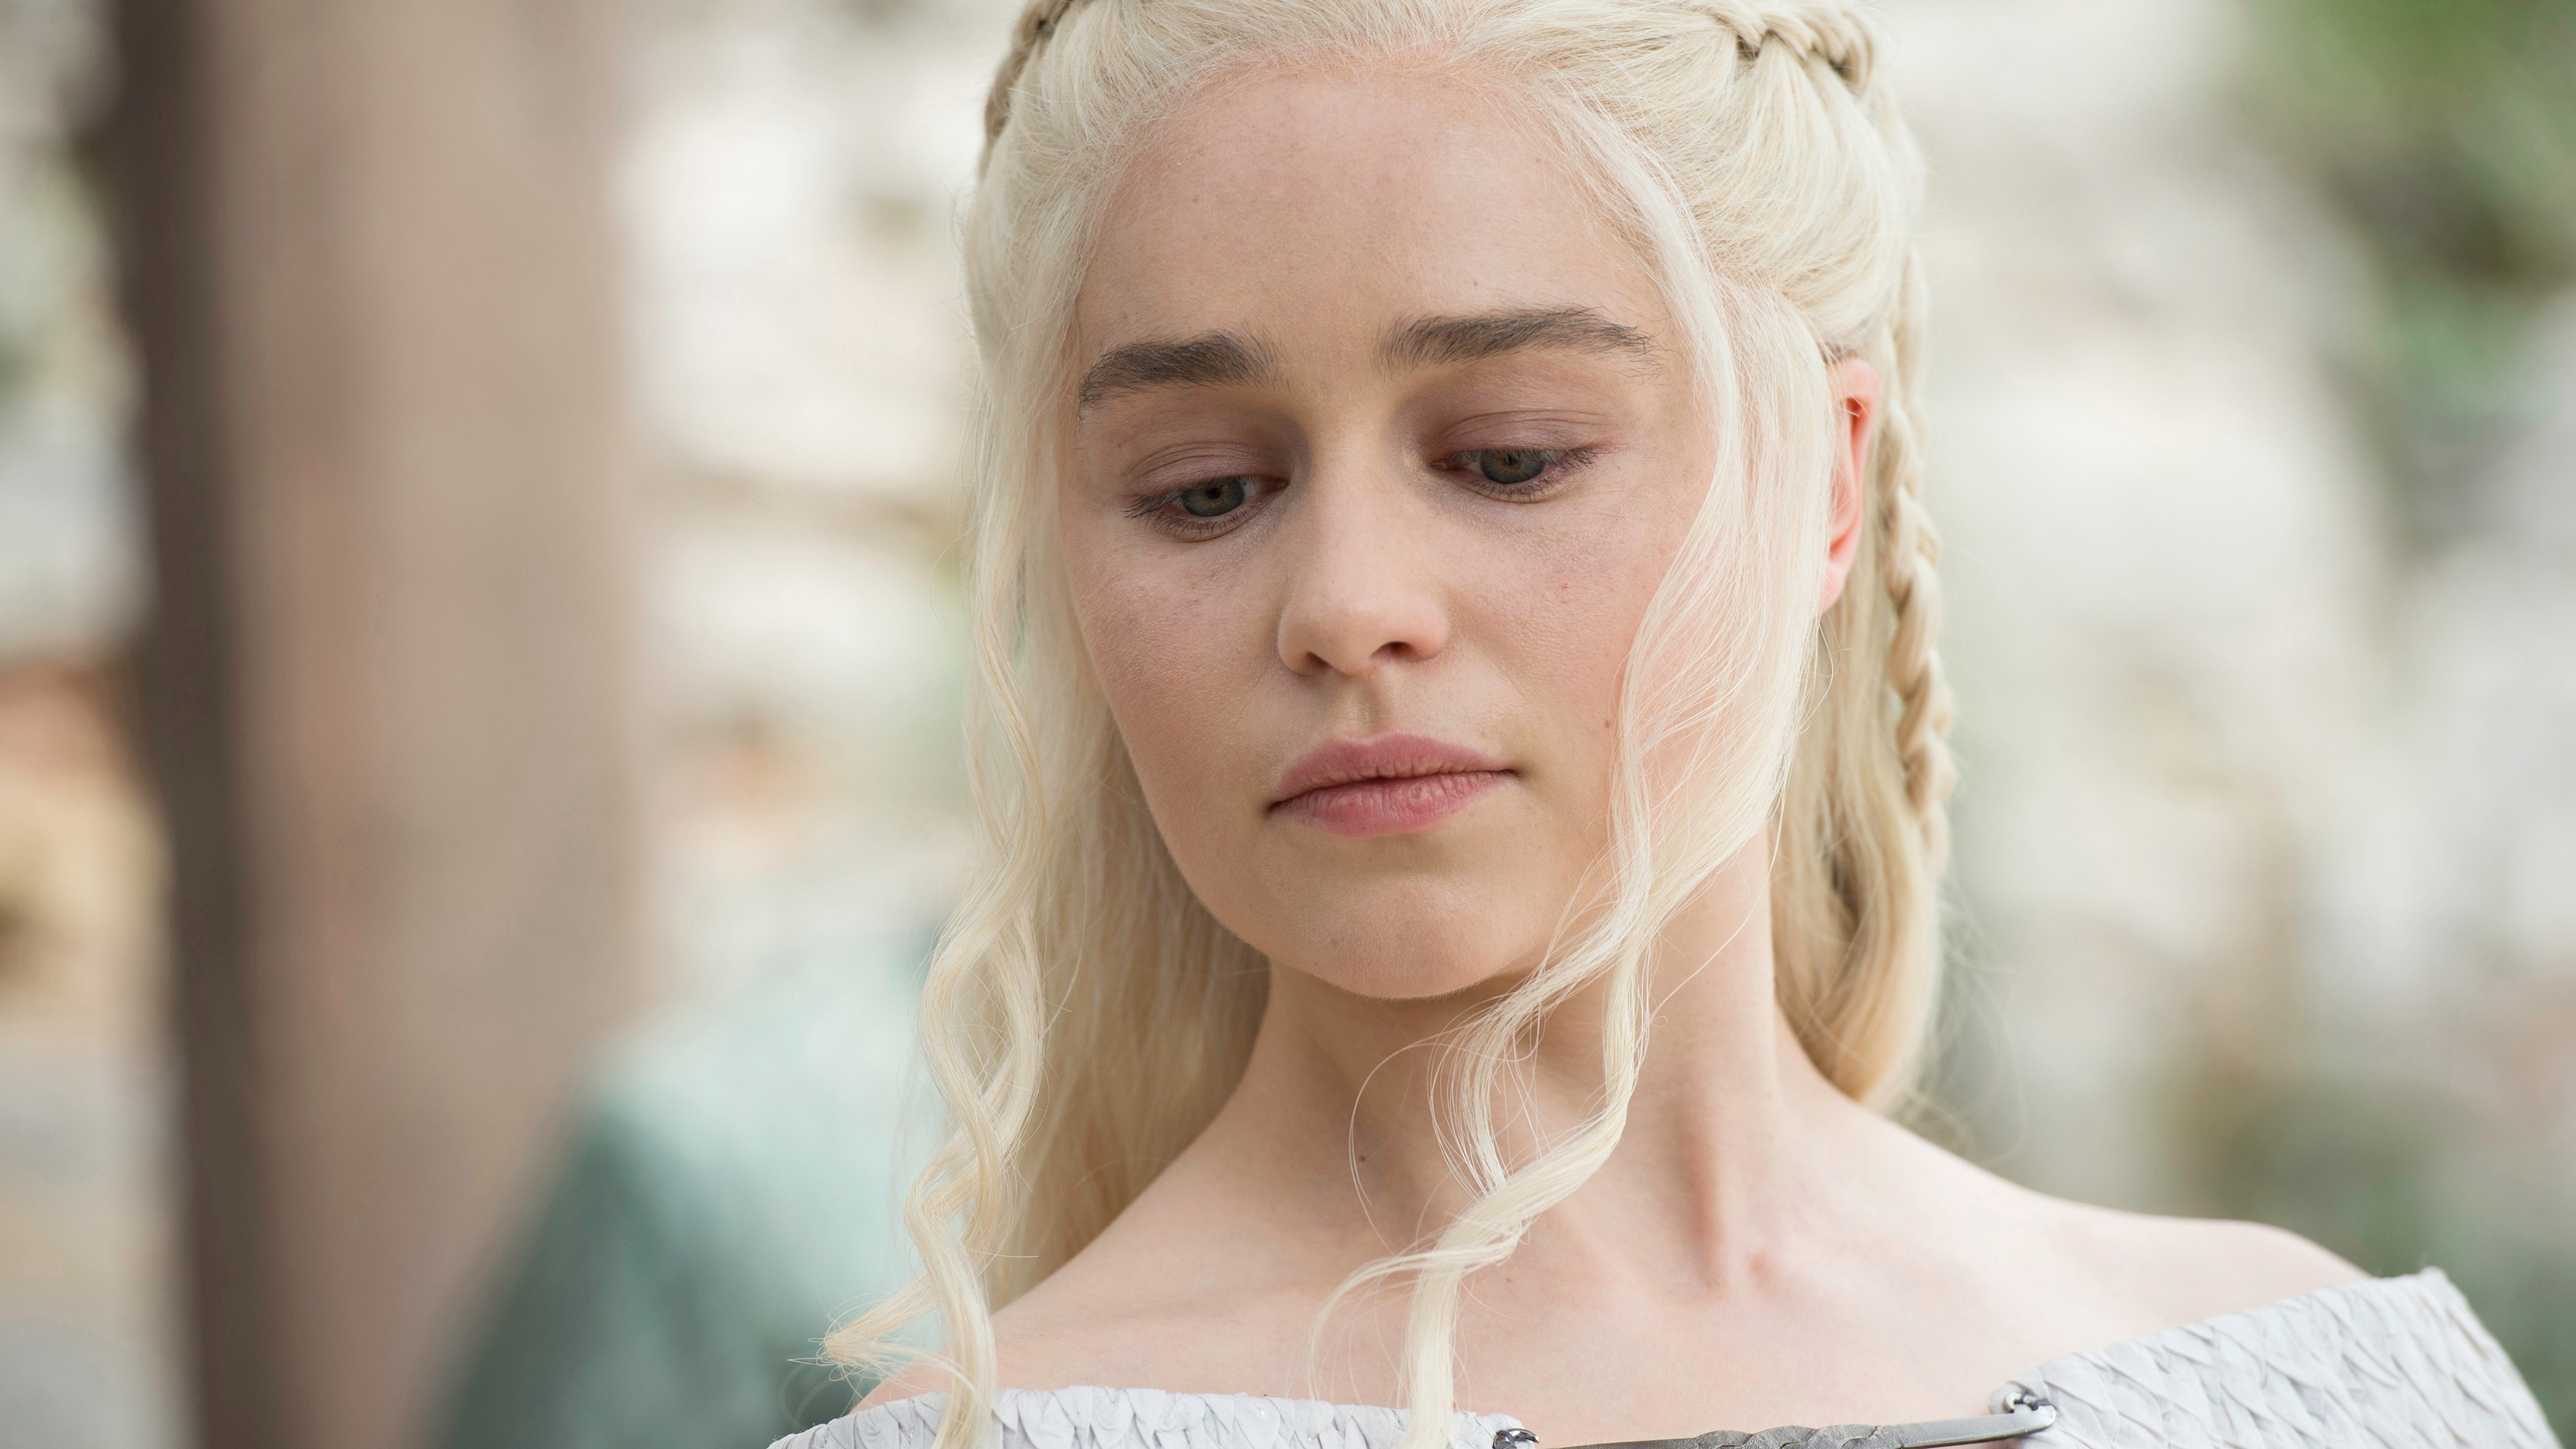 People 4200x2363 Game of Thrones Daenerys Targaryen Emilia Clarke women actress TV series face fantasy girl